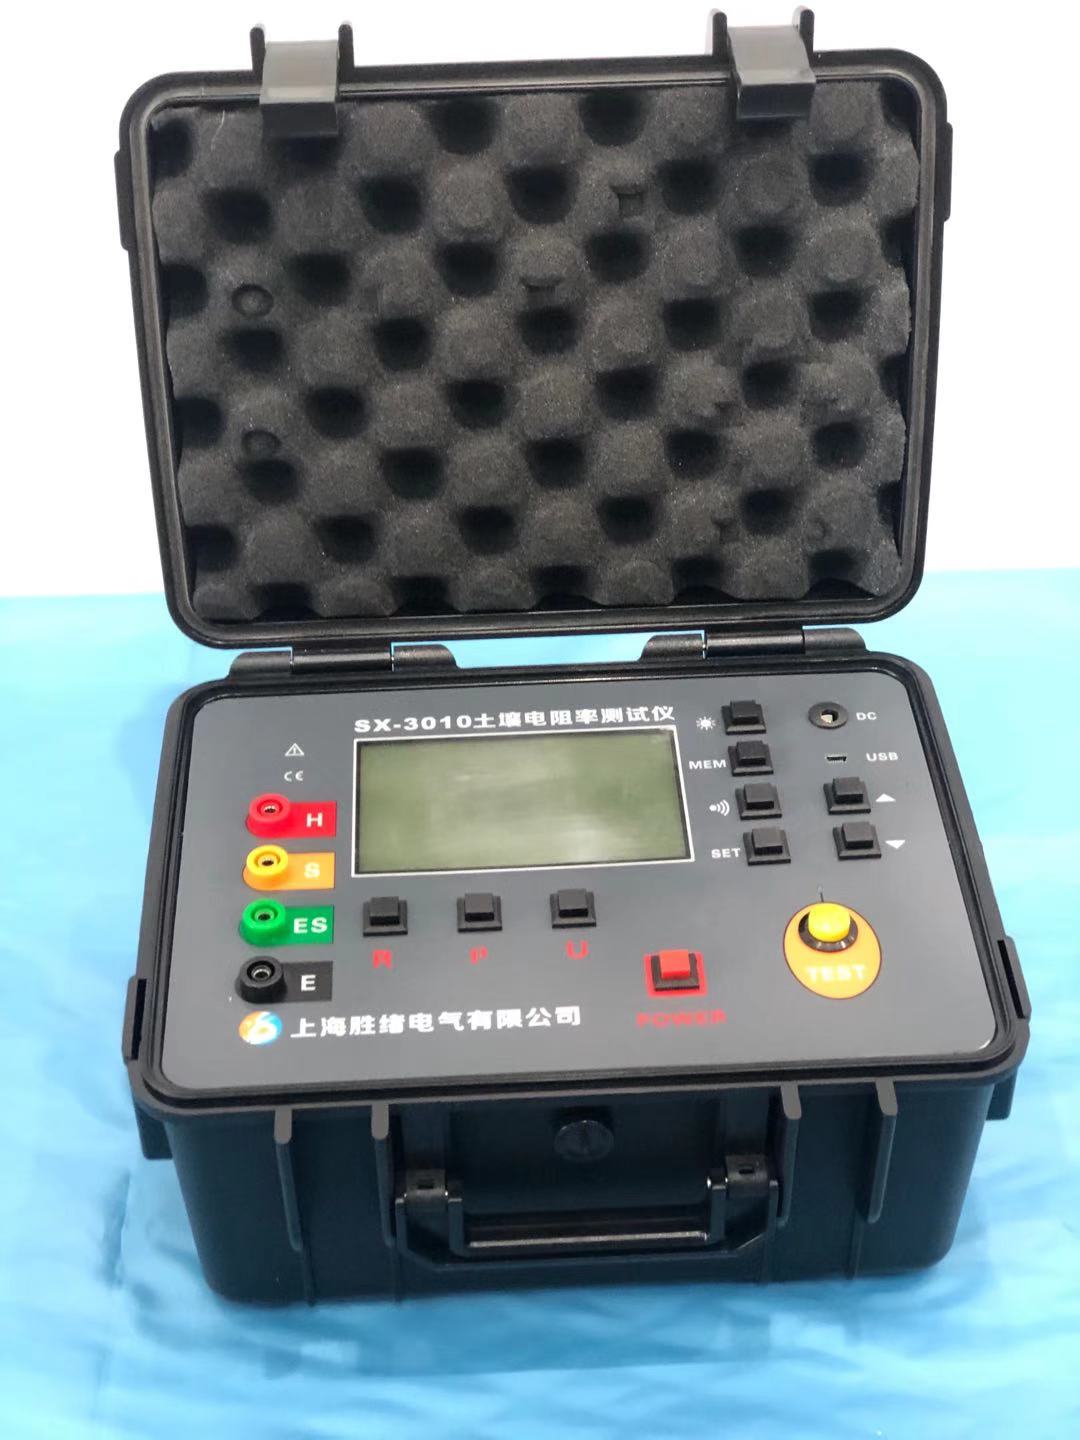 黑龙江k-2127b多功能土壤电阻率测试仪s3010_体积电阻率测试仪相关-上海胜绪电气有限公司2